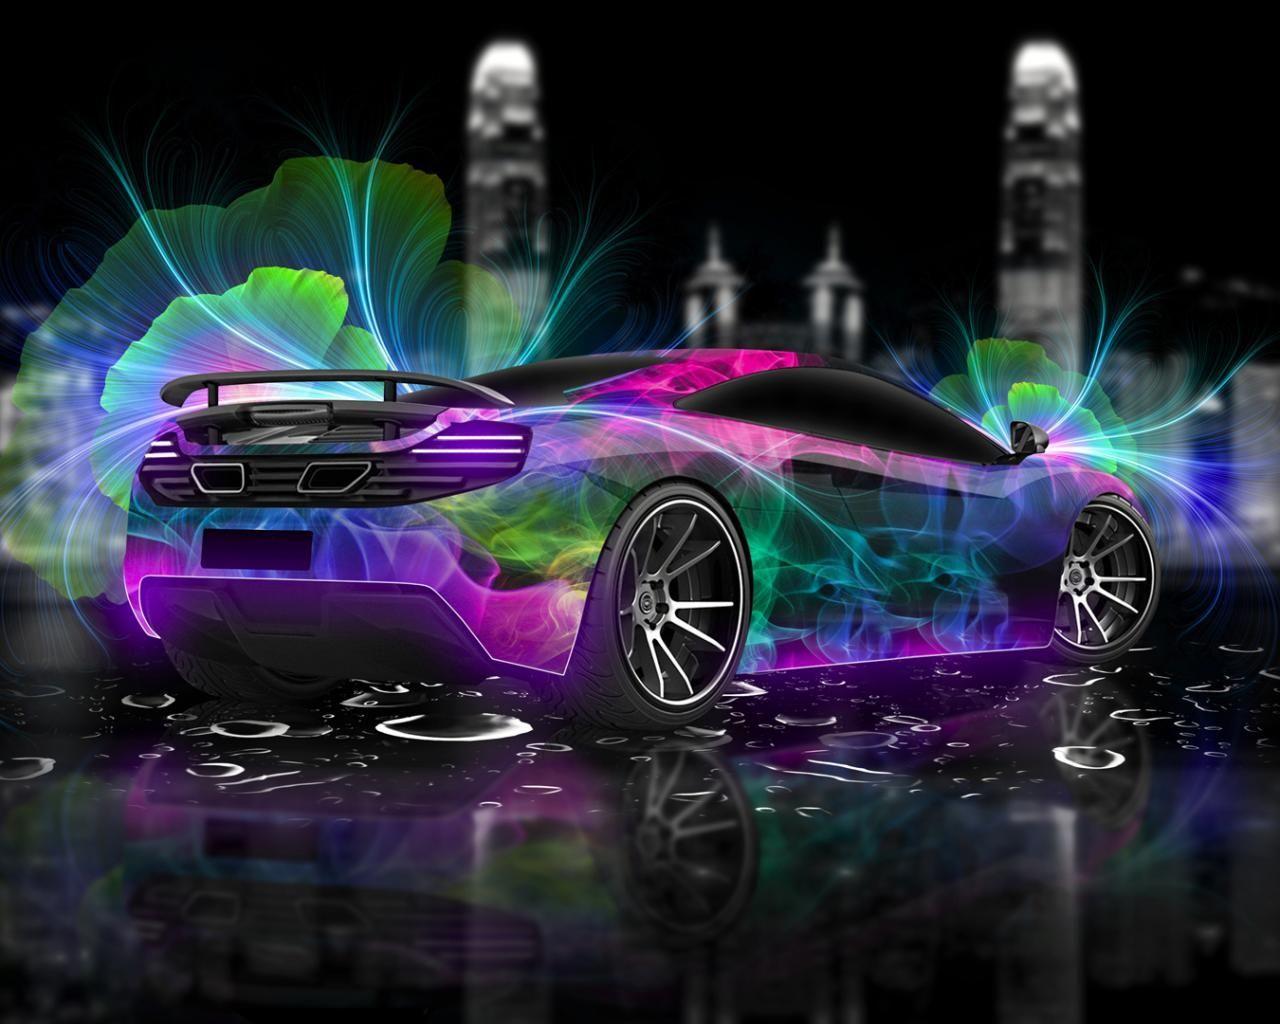 super cool cars wallpaper .com